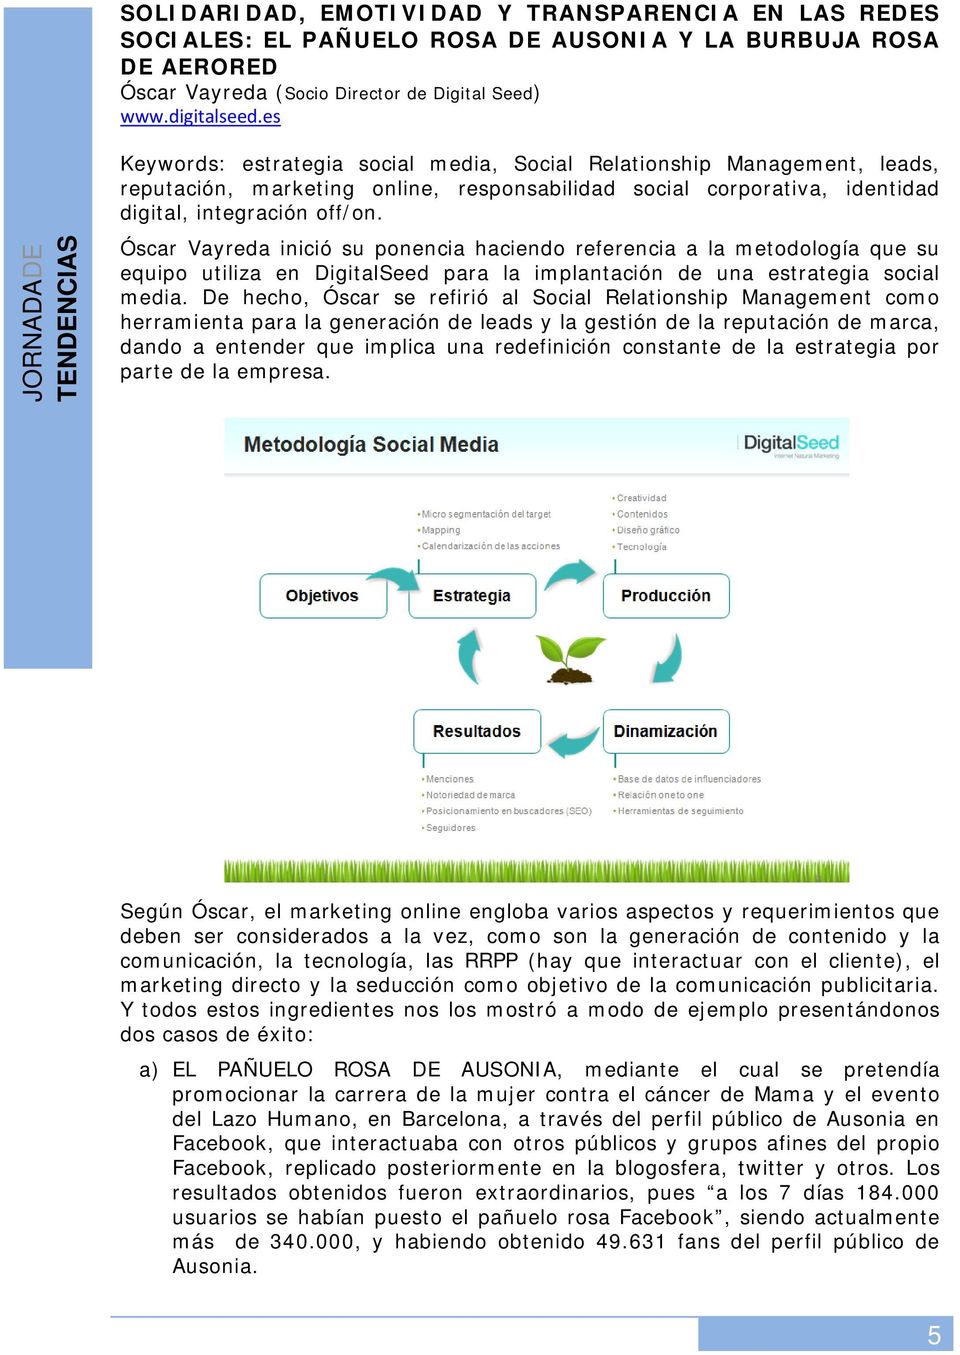 Óscar Vayreda inició su ponencia haciendo referencia a la metodología que su equipo utiliza en DigitalSeed para la implantación de una estrategia social media.